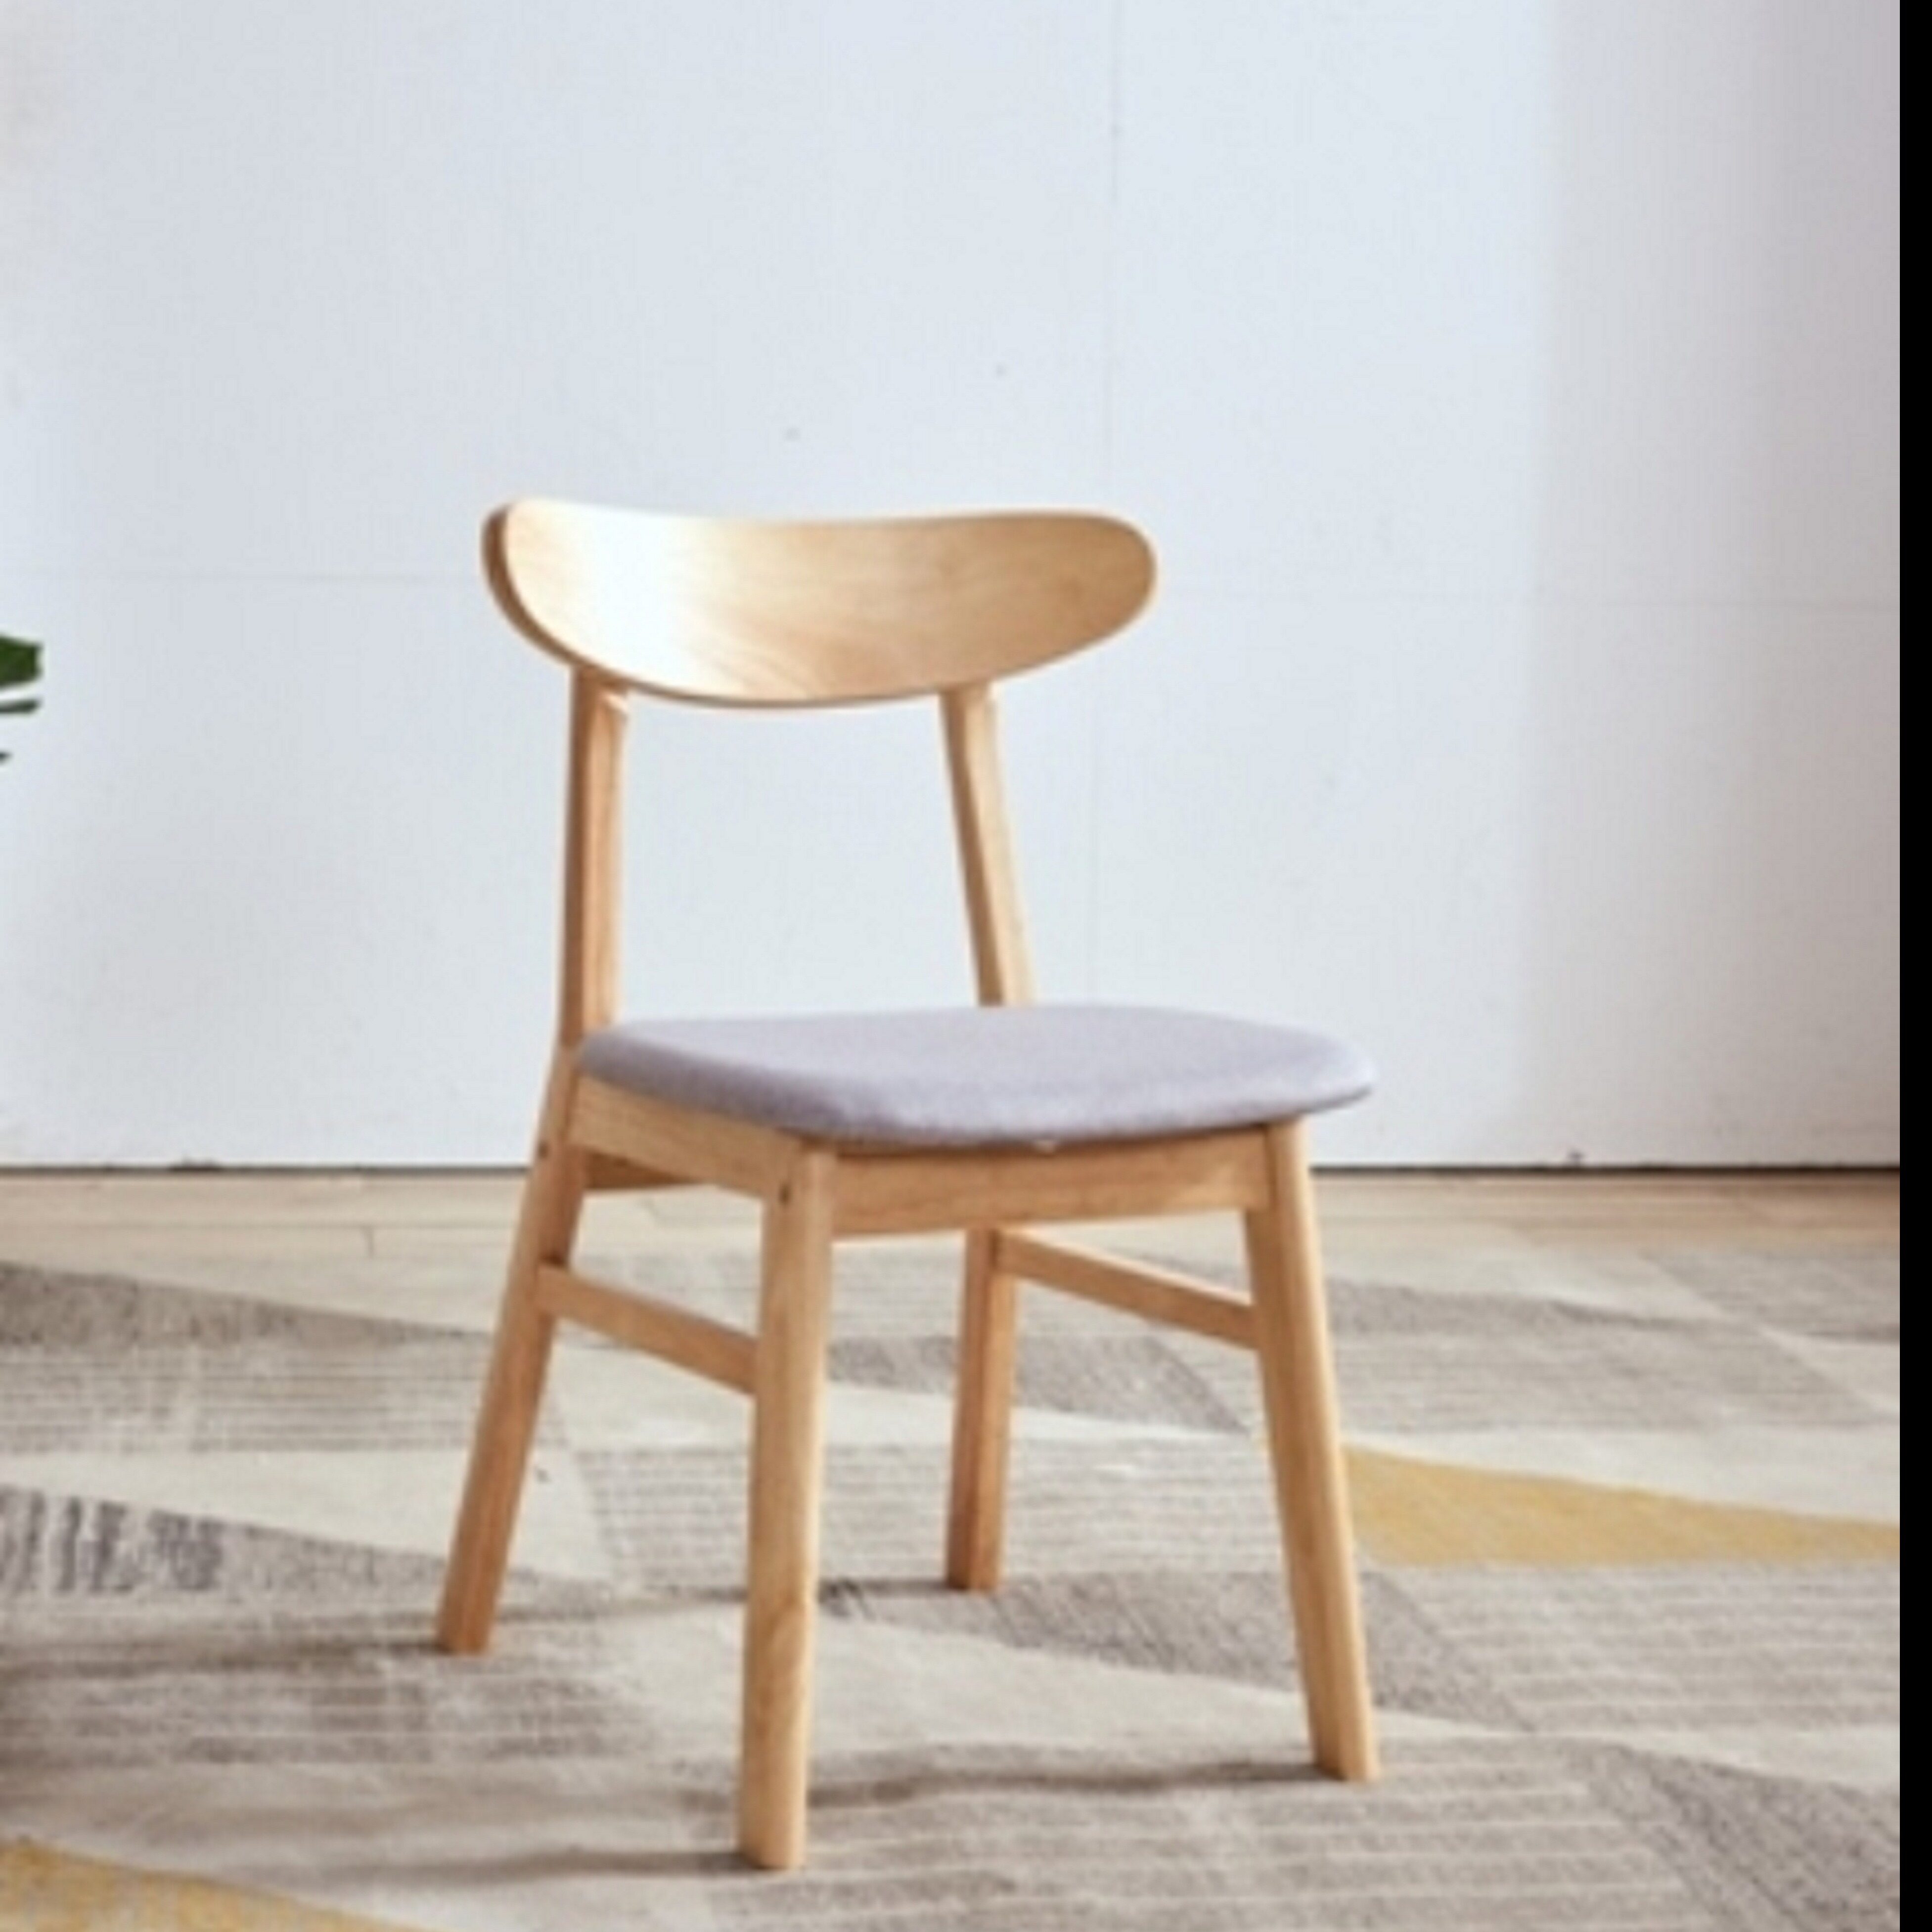 เก้าอี้ C-IK+-Evergreen-Furniture-Ikea Plus C-IK-+ เก้าอี้ไม้สไตล์เรียบหรู ( 4 ตัว / กล่อง ) มี2สีให้เลือก เบาะรองนั่งมีเพียงสีน้ำตาล สีเดียว